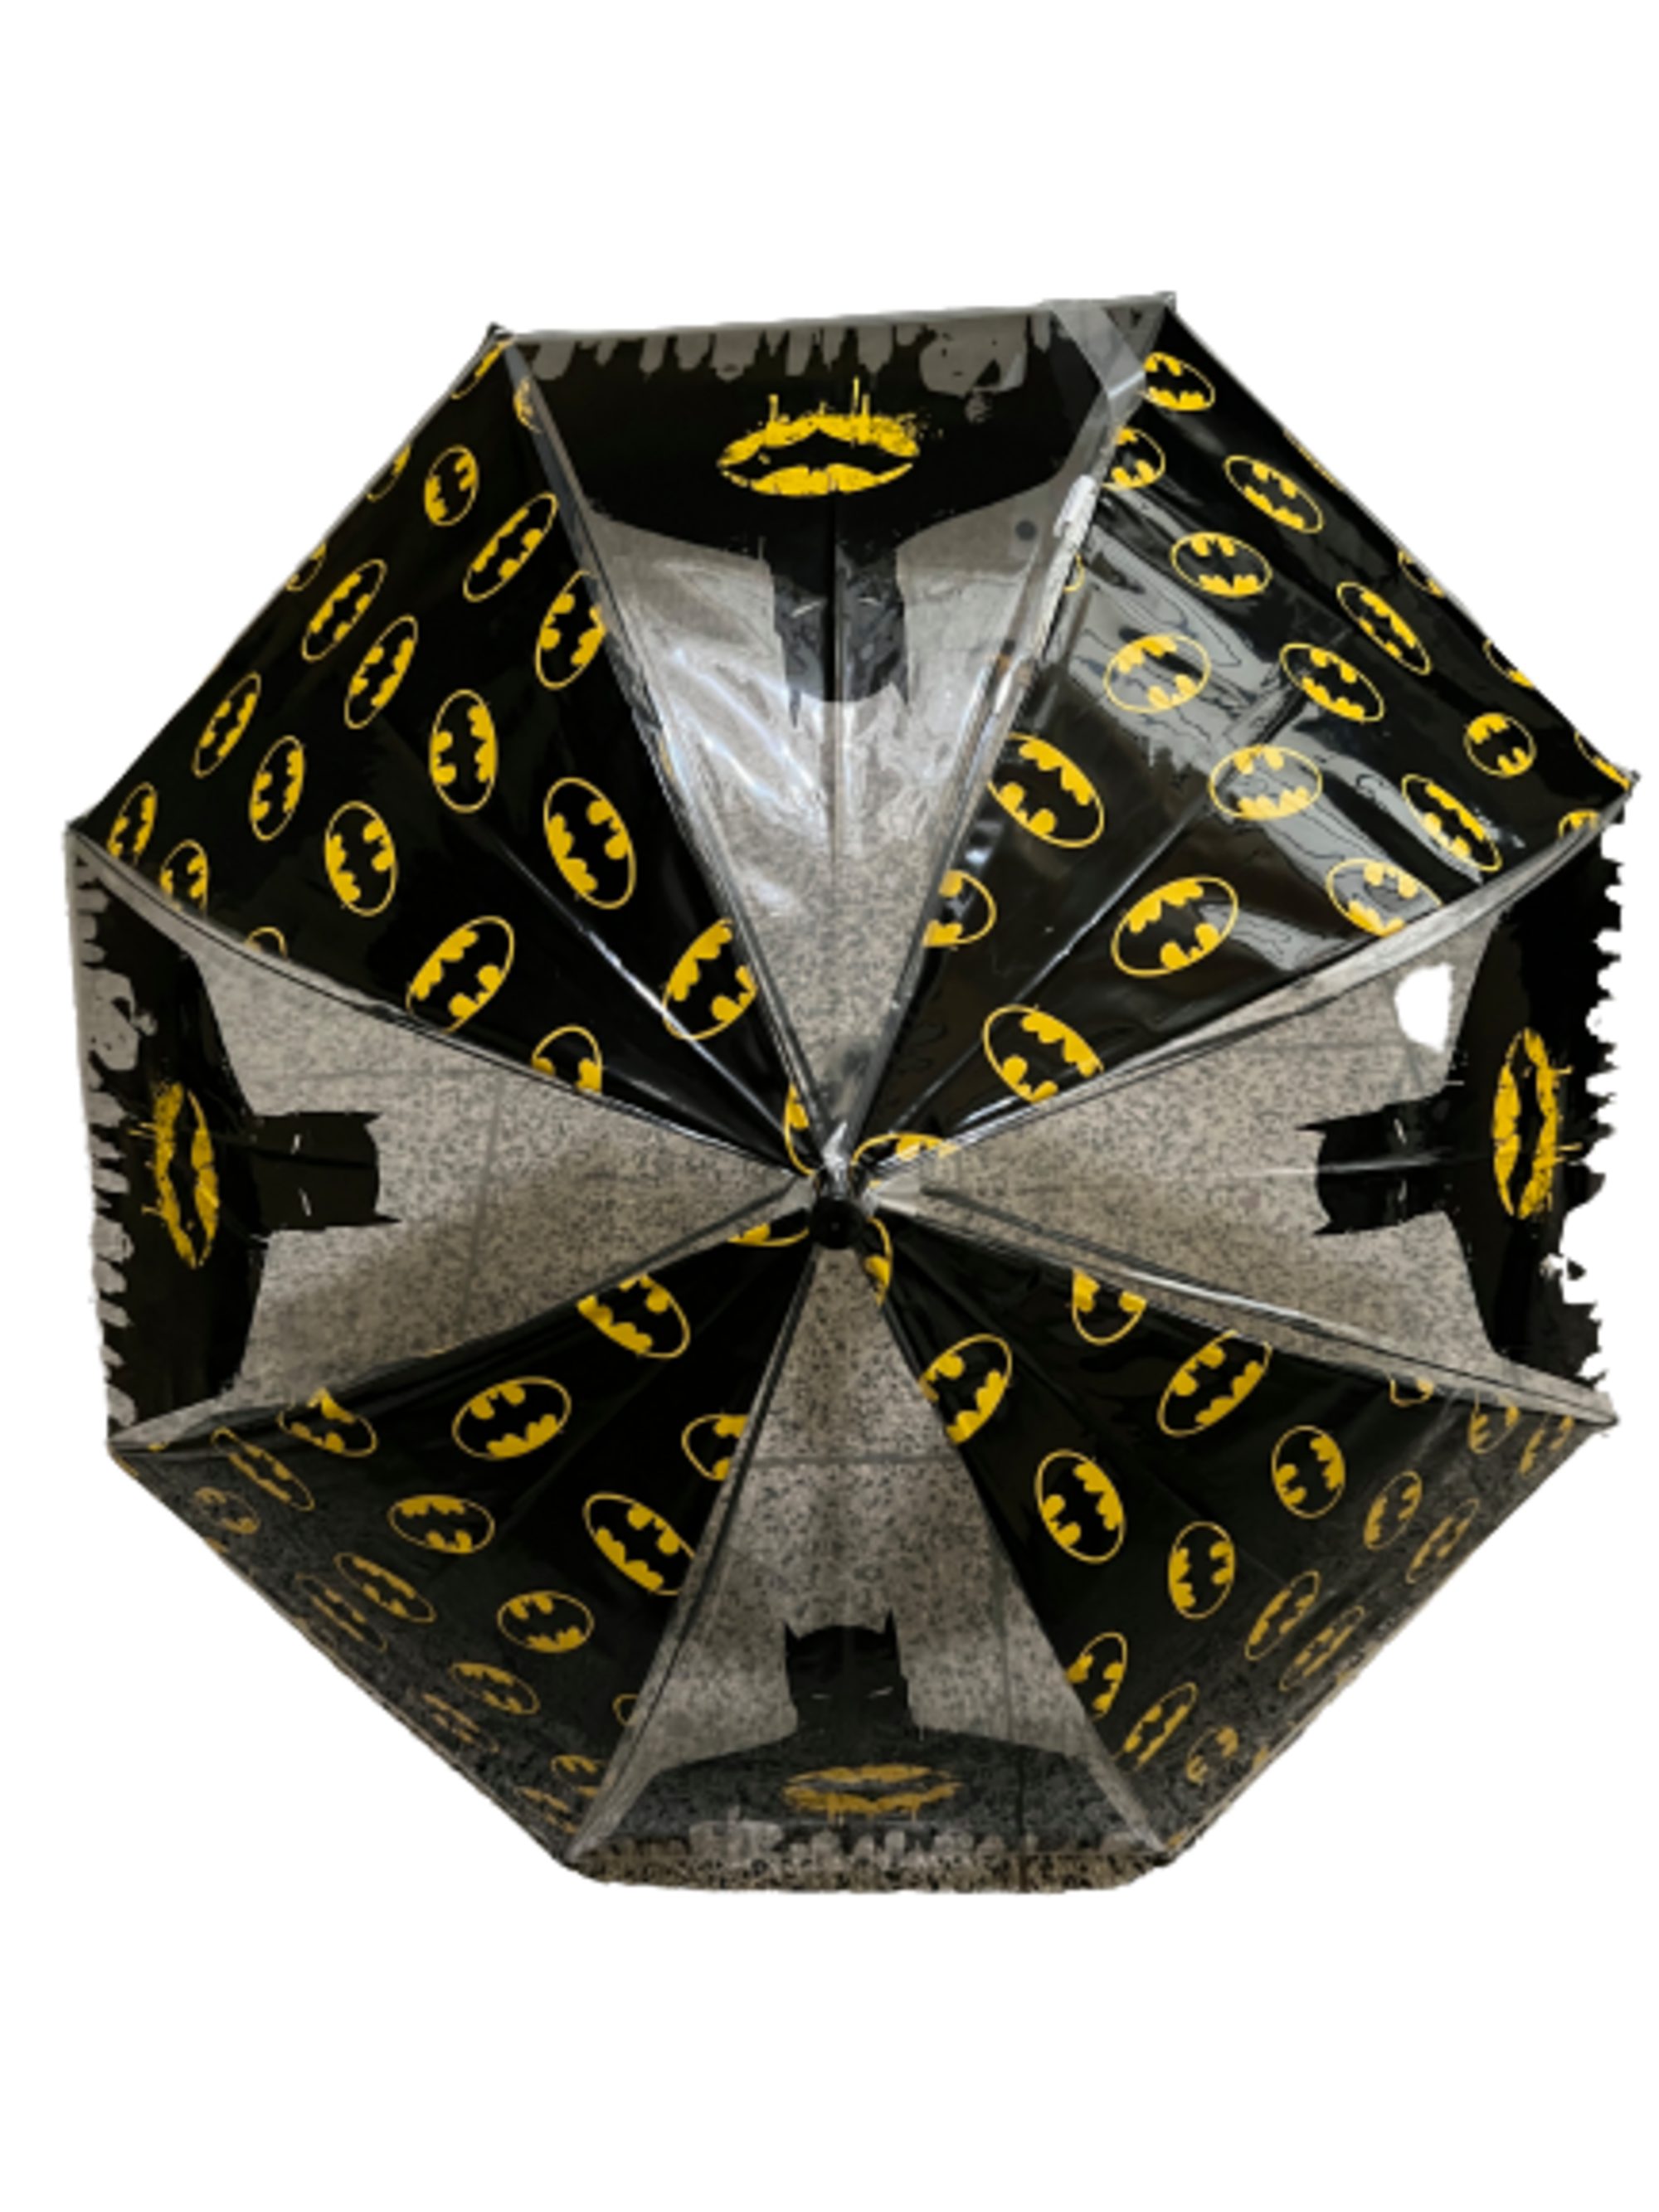 Batman Langregenschirm Batman Kinderregenschirm (halbautomatisch) cm Ø74